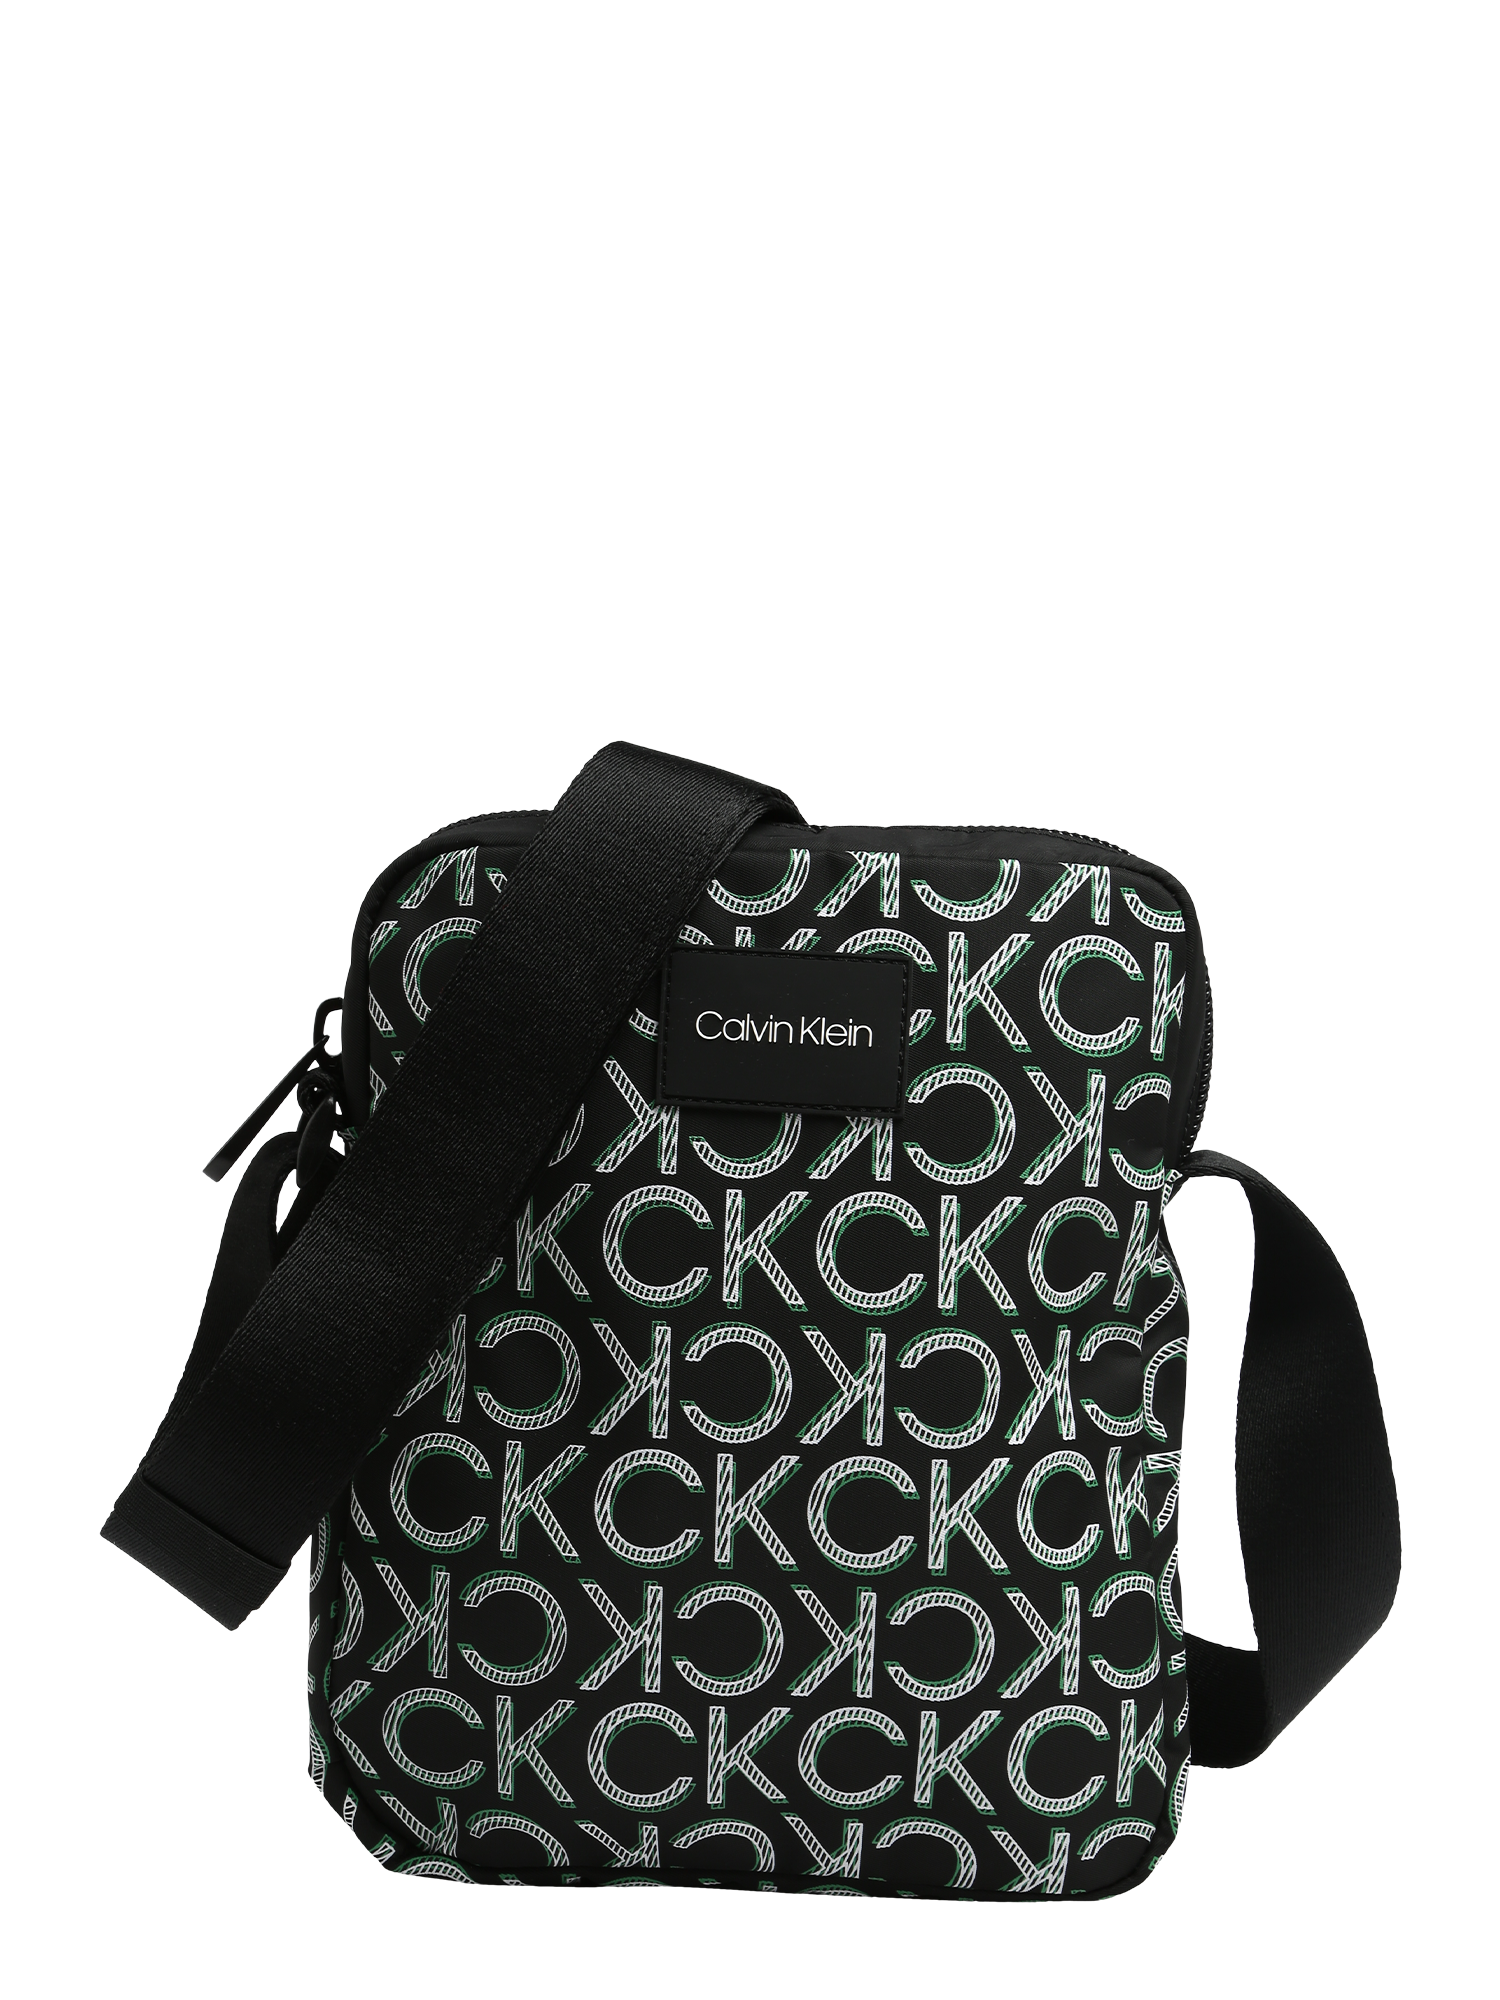 Torby & plecaki Torby & plecaki Calvin Klein Torba na ramię w kolorze Czarnym 